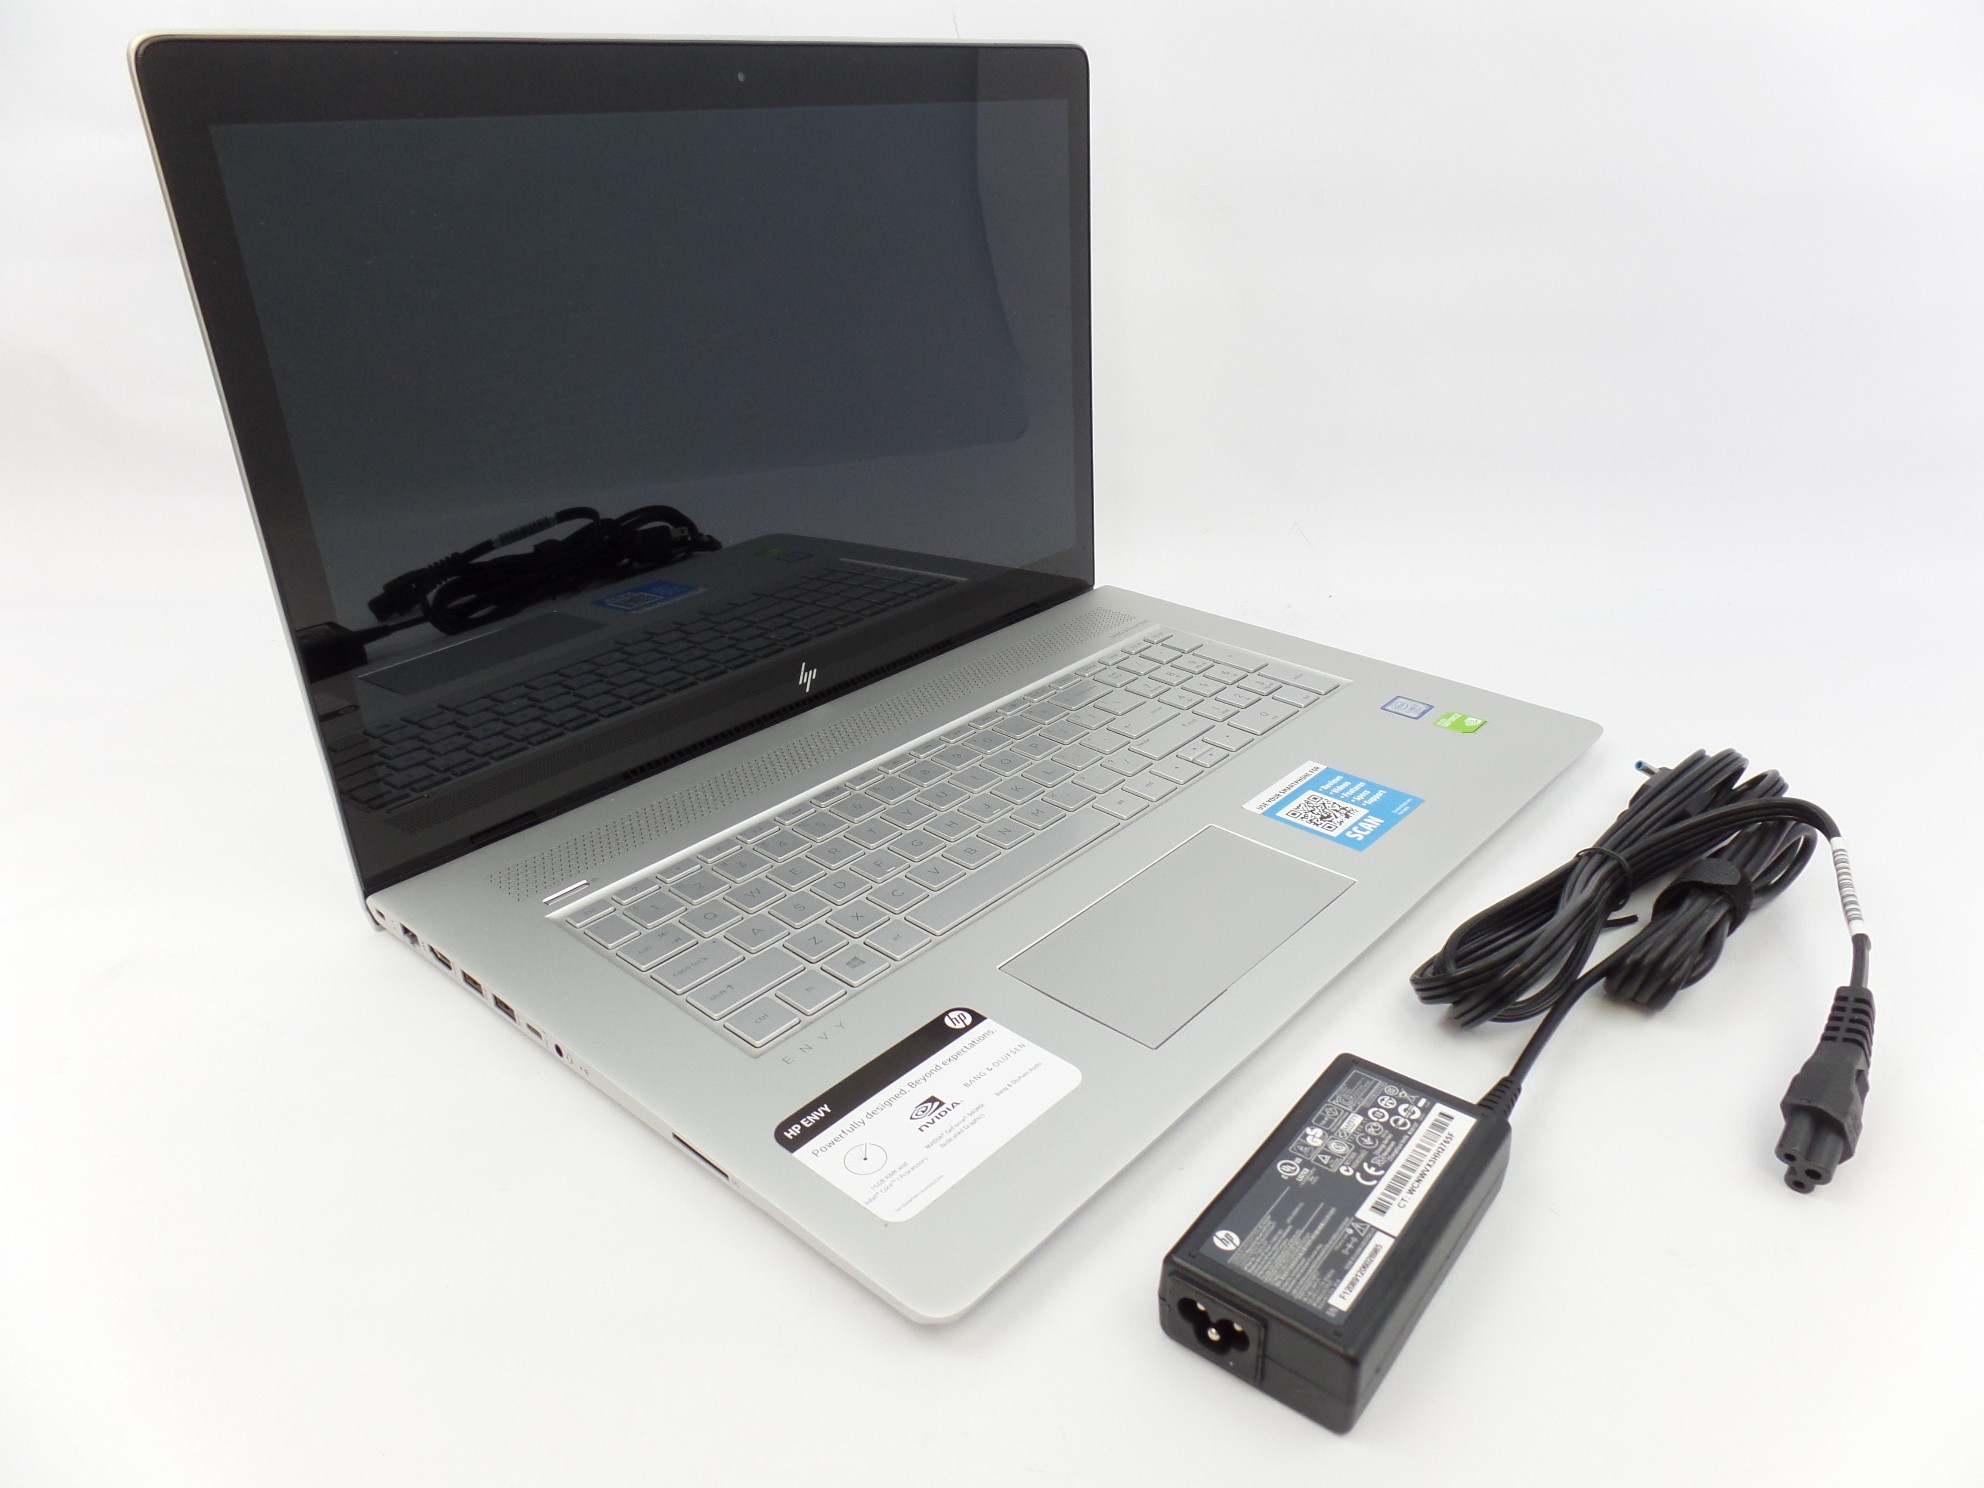 HP ENVY 17m-ae011dx 17" FHD Non-Touch i7-7500U 16GB 1TB 940MX W10H Laptop